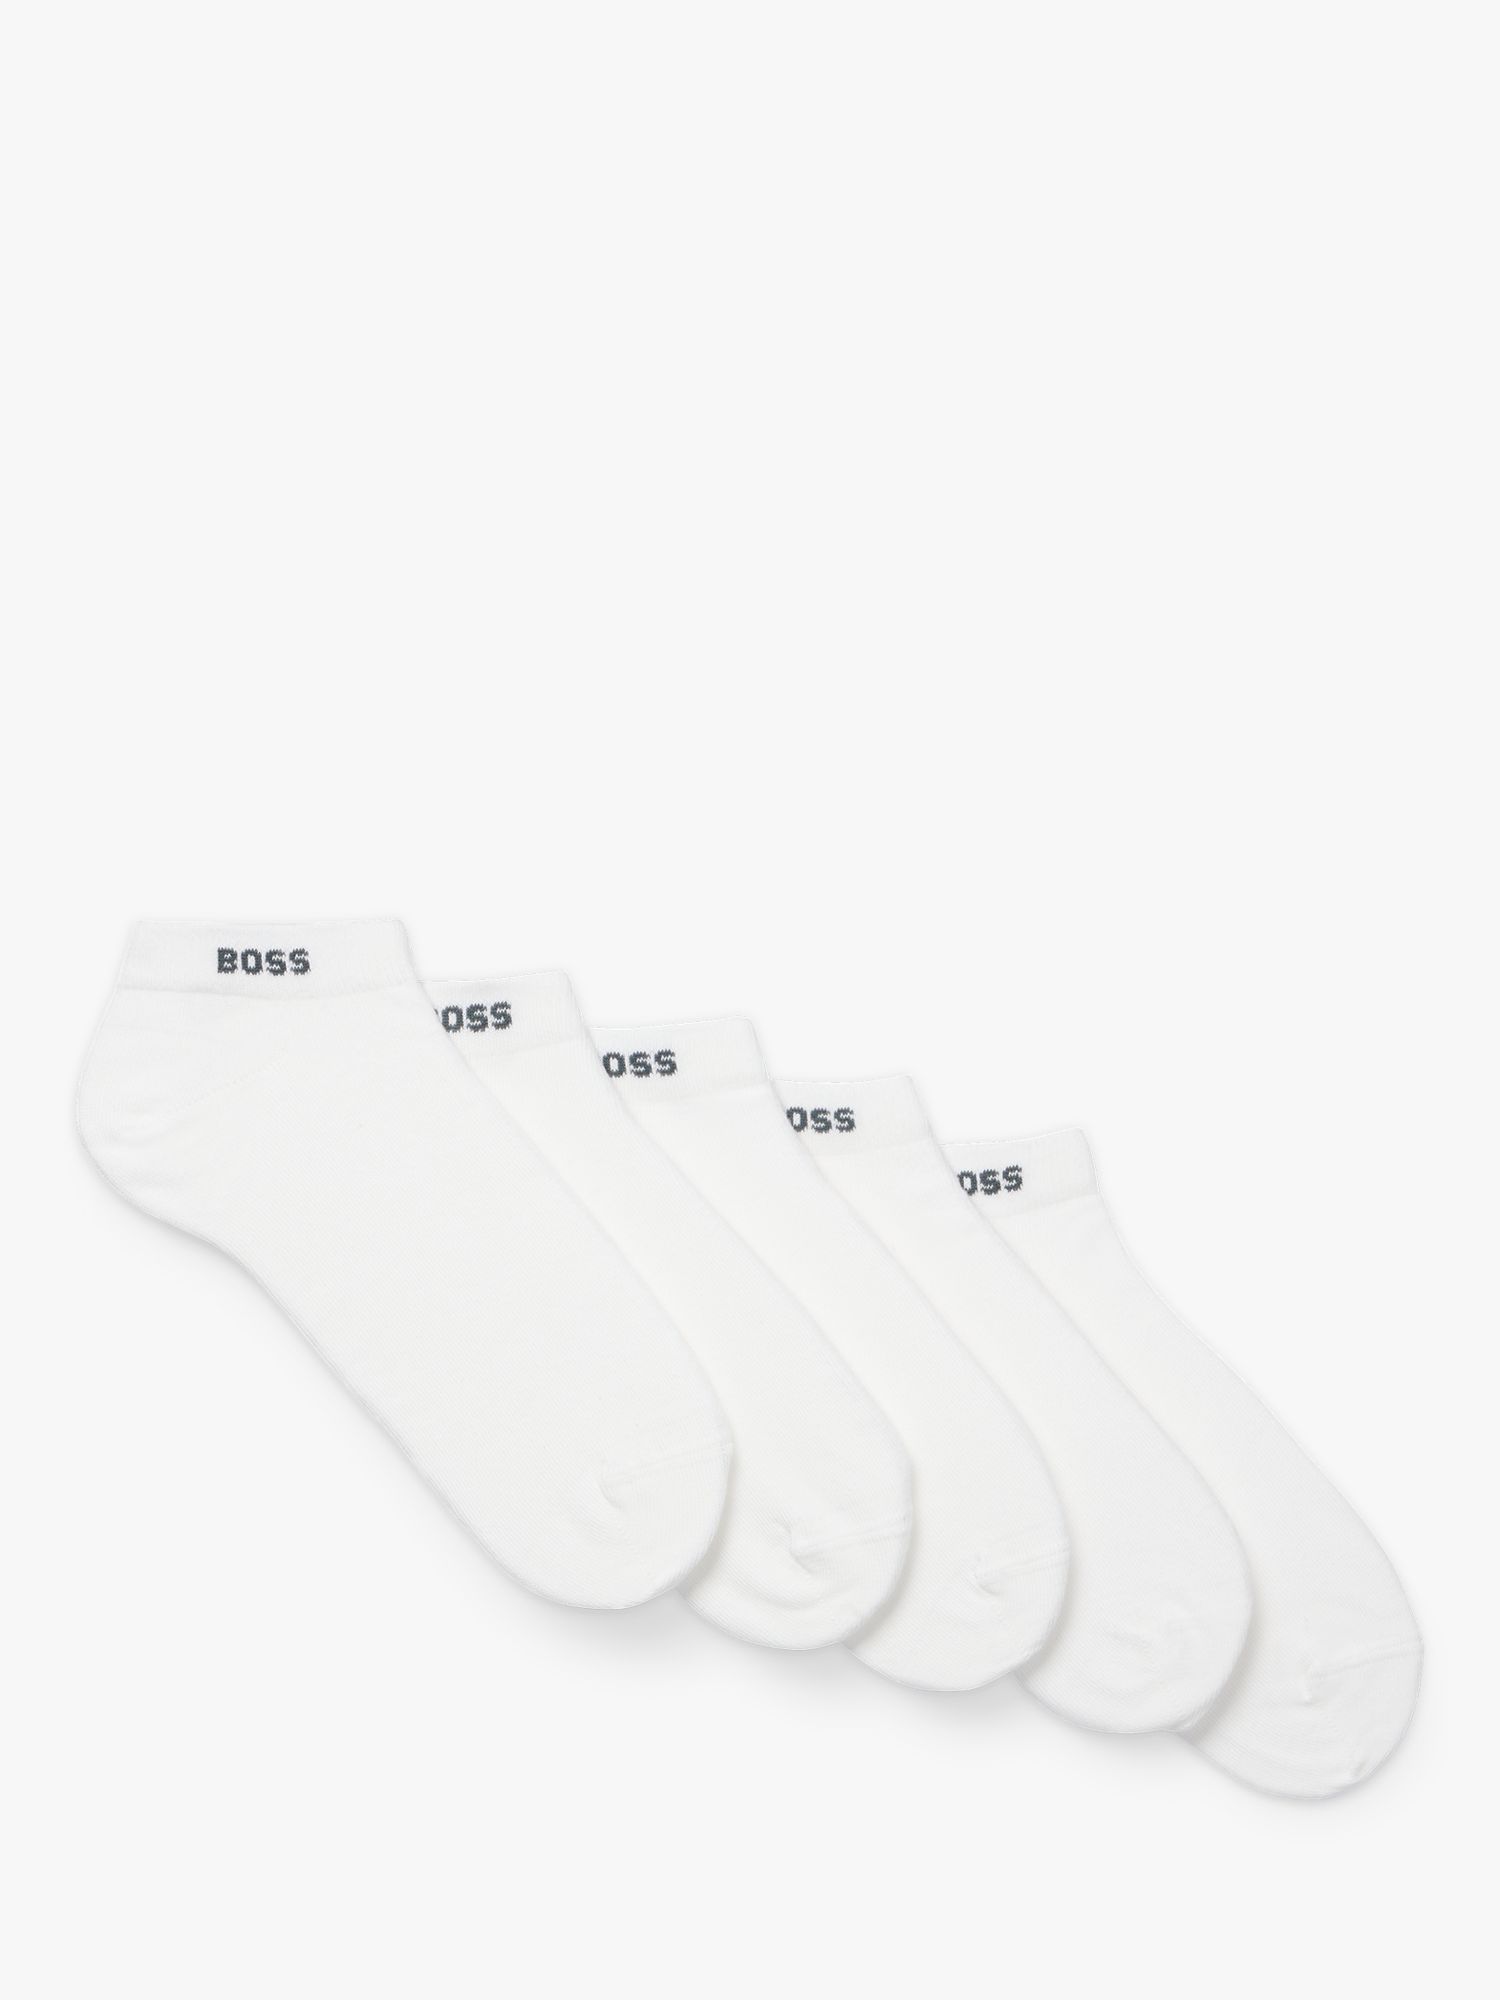 Buy BOSS Logo Trainer Socks, Pack of 5 Online at johnlewis.com